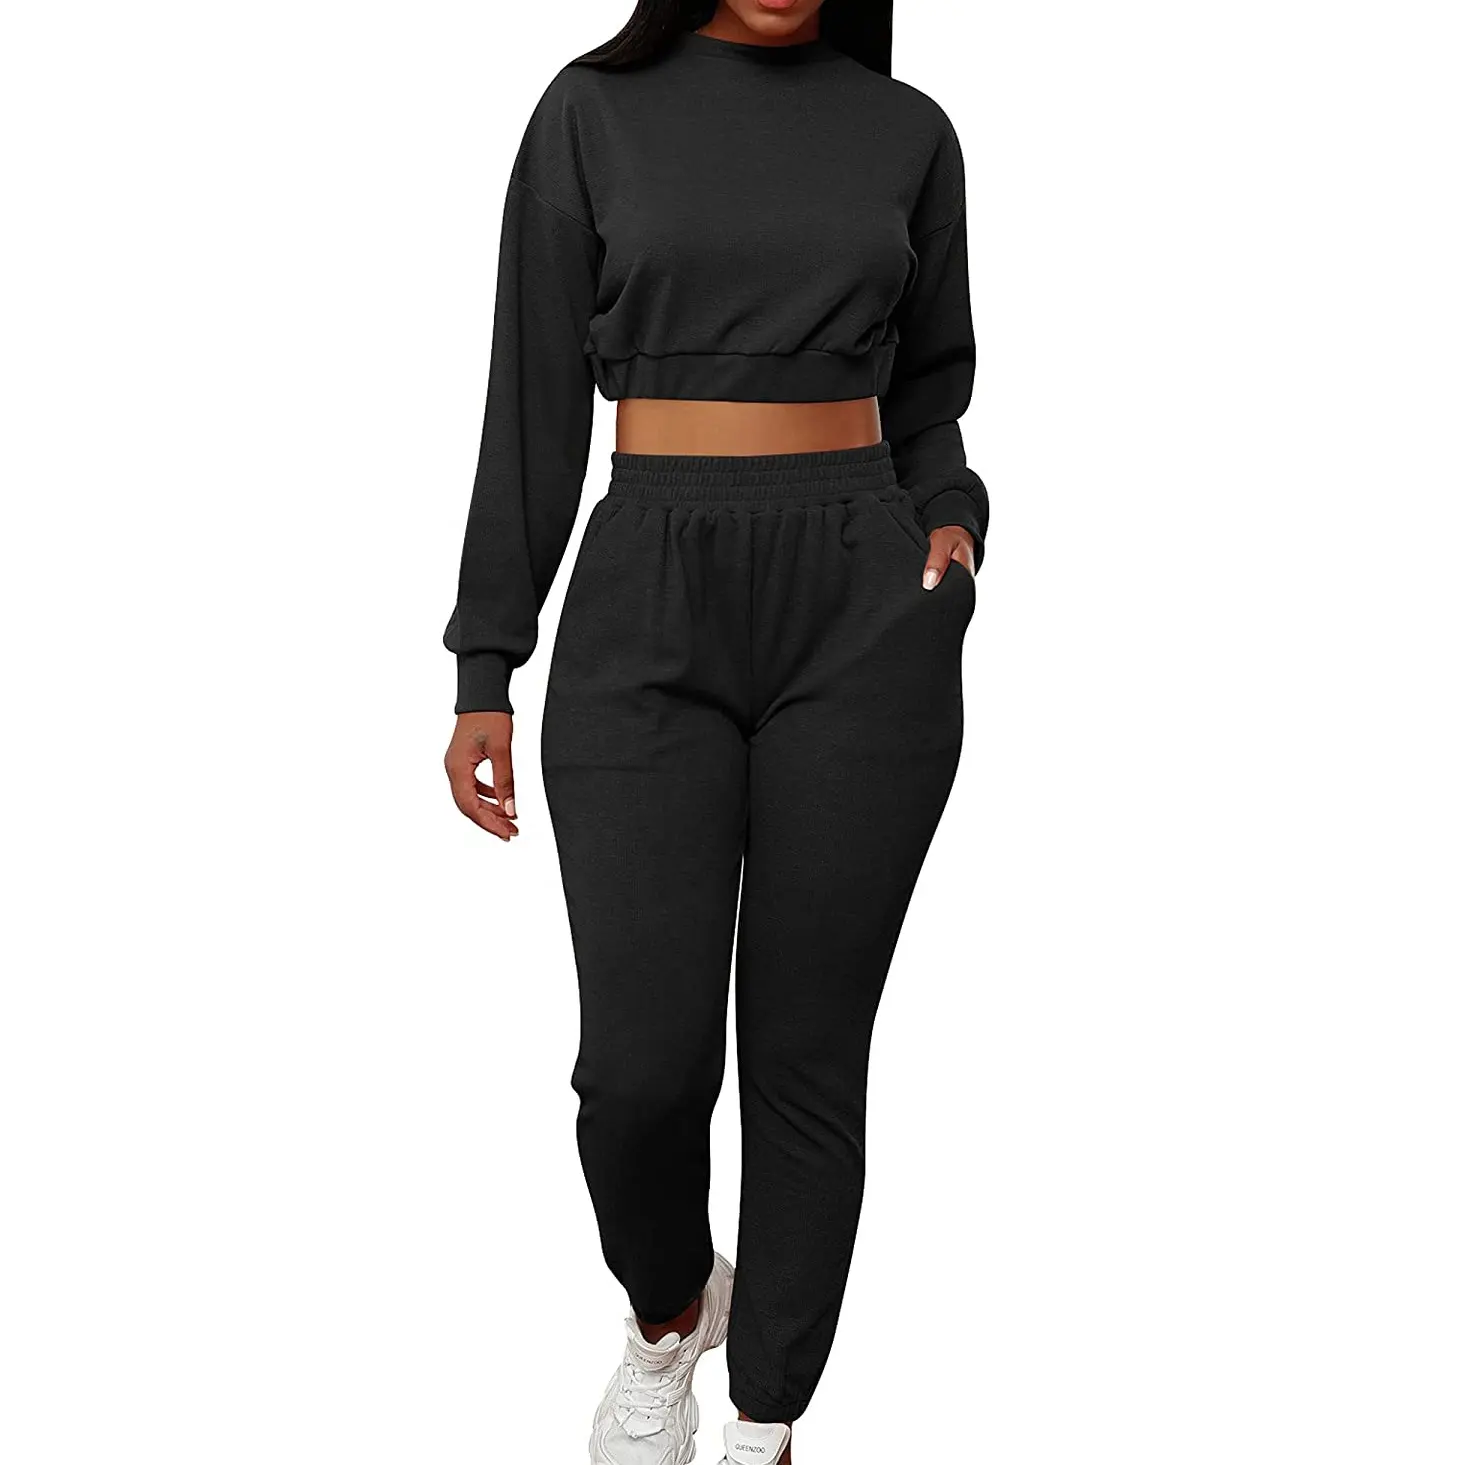 Athletic Wear Multiple Styles Women Tie Dye Active Wear Set One Oblique Shoulder Sport Bra High Waist Workout Leggings Yoga Set